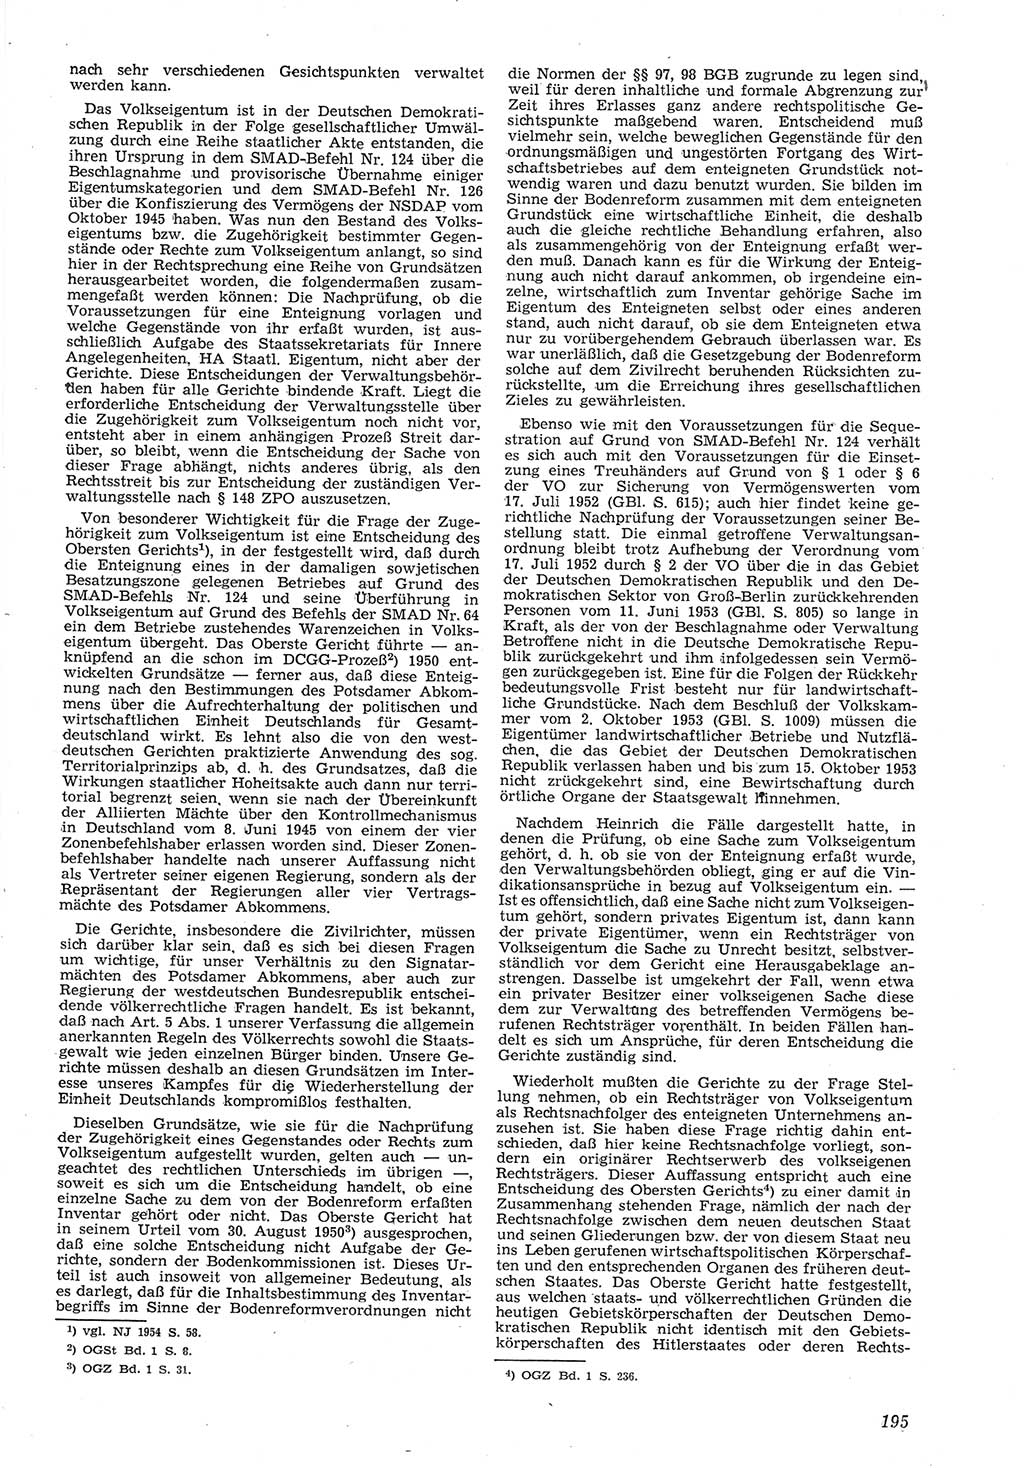 Neue Justiz (NJ), Zeitschrift für Recht und Rechtswissenschaft [Deutsche Demokratische Republik (DDR)], 8. Jahrgang 1954, Seite 195 (NJ DDR 1954, S. 195)